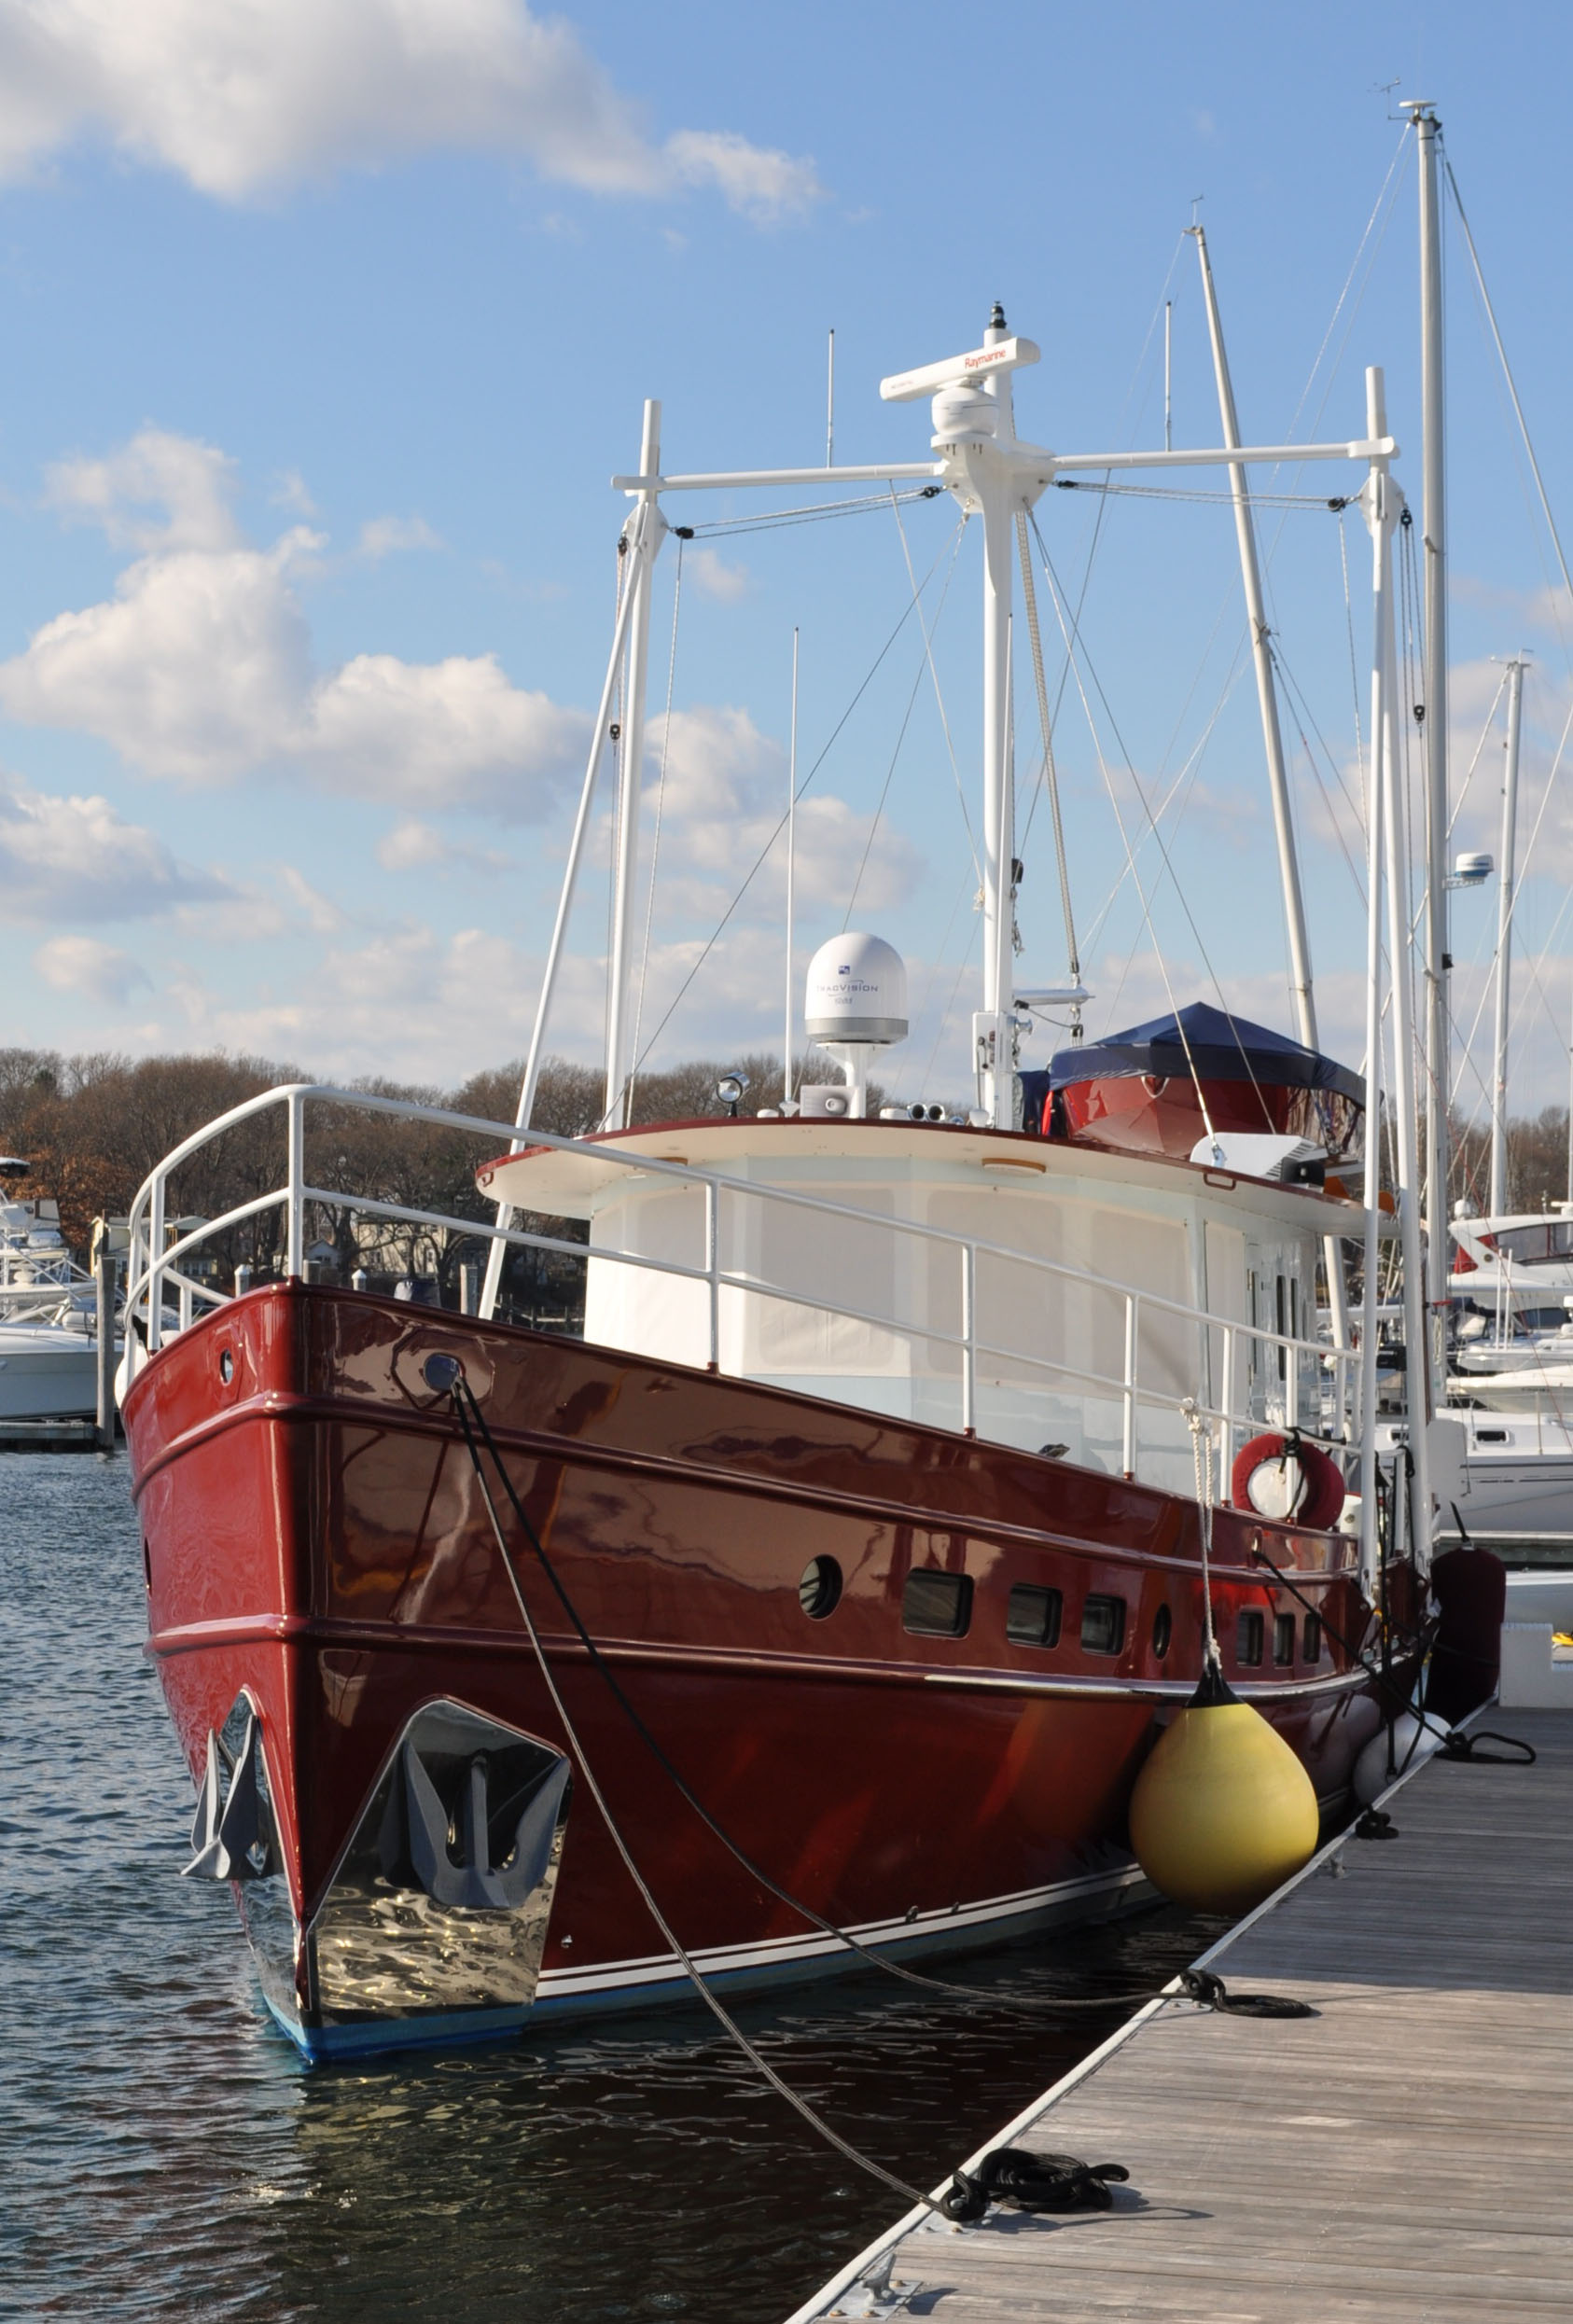 53' Yacht Valdemar - Kasten Marine Design, Inc.